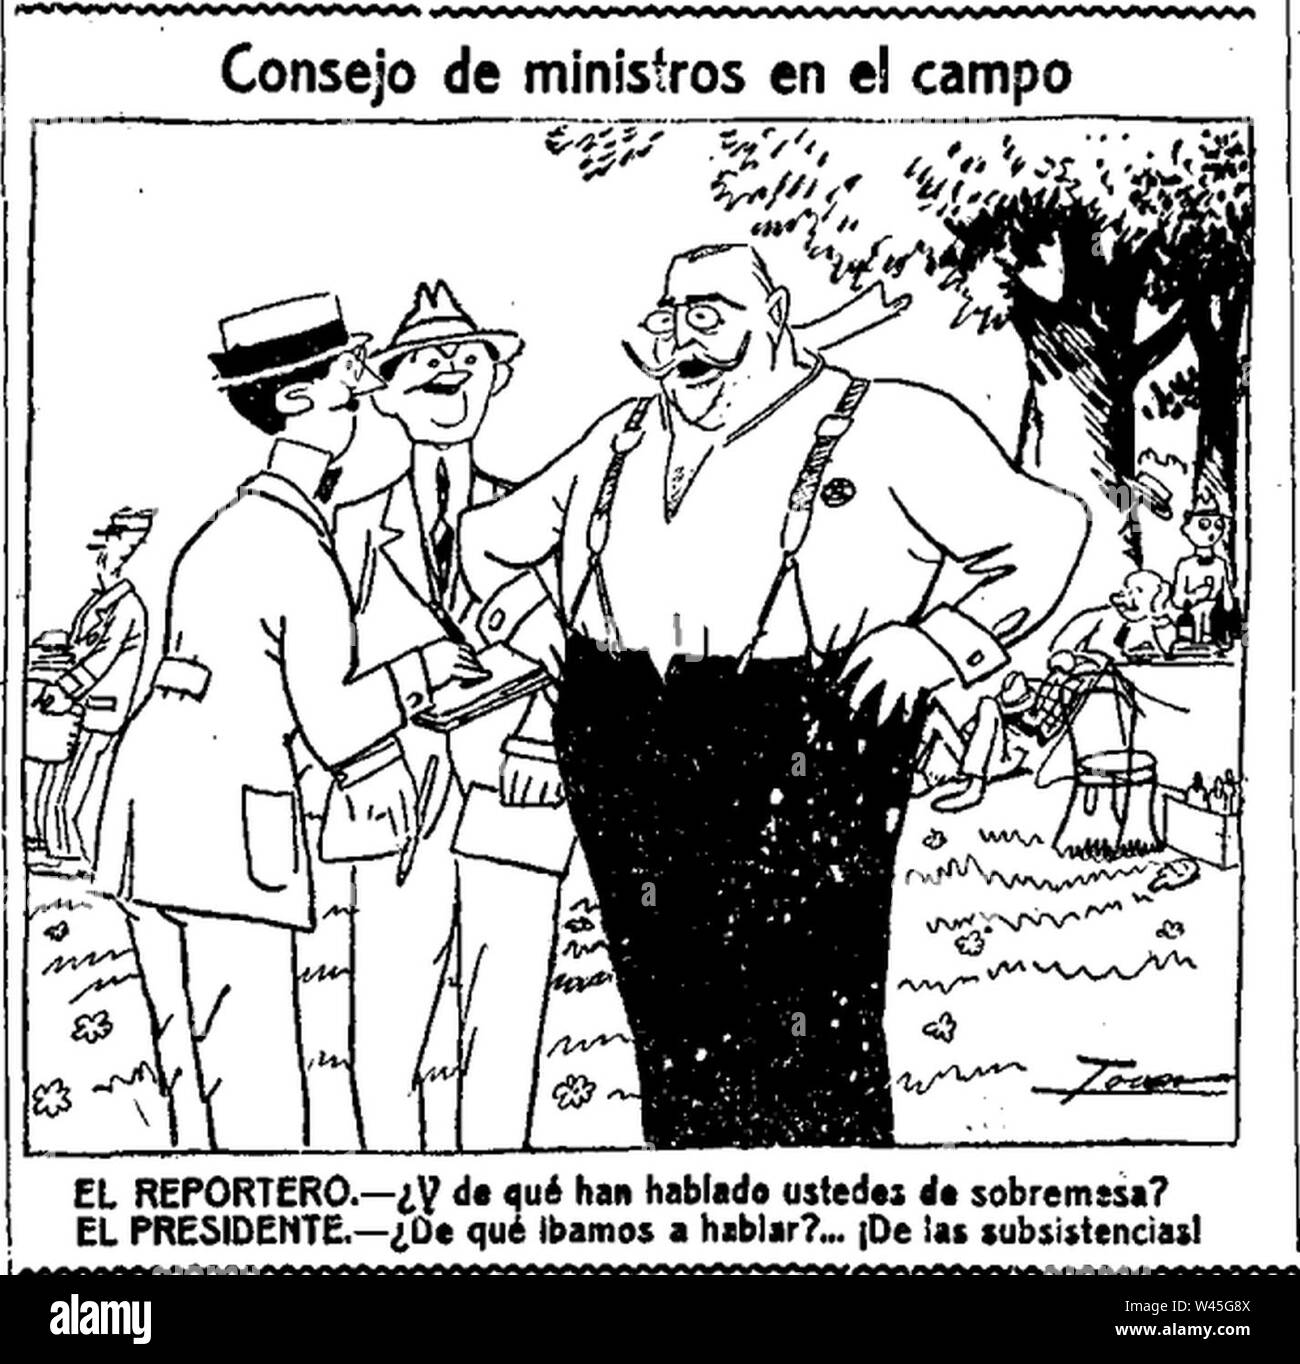 Consejo de ministros en el campo de Tovar La Voz 10 de mayo de 1921. Stock Photo